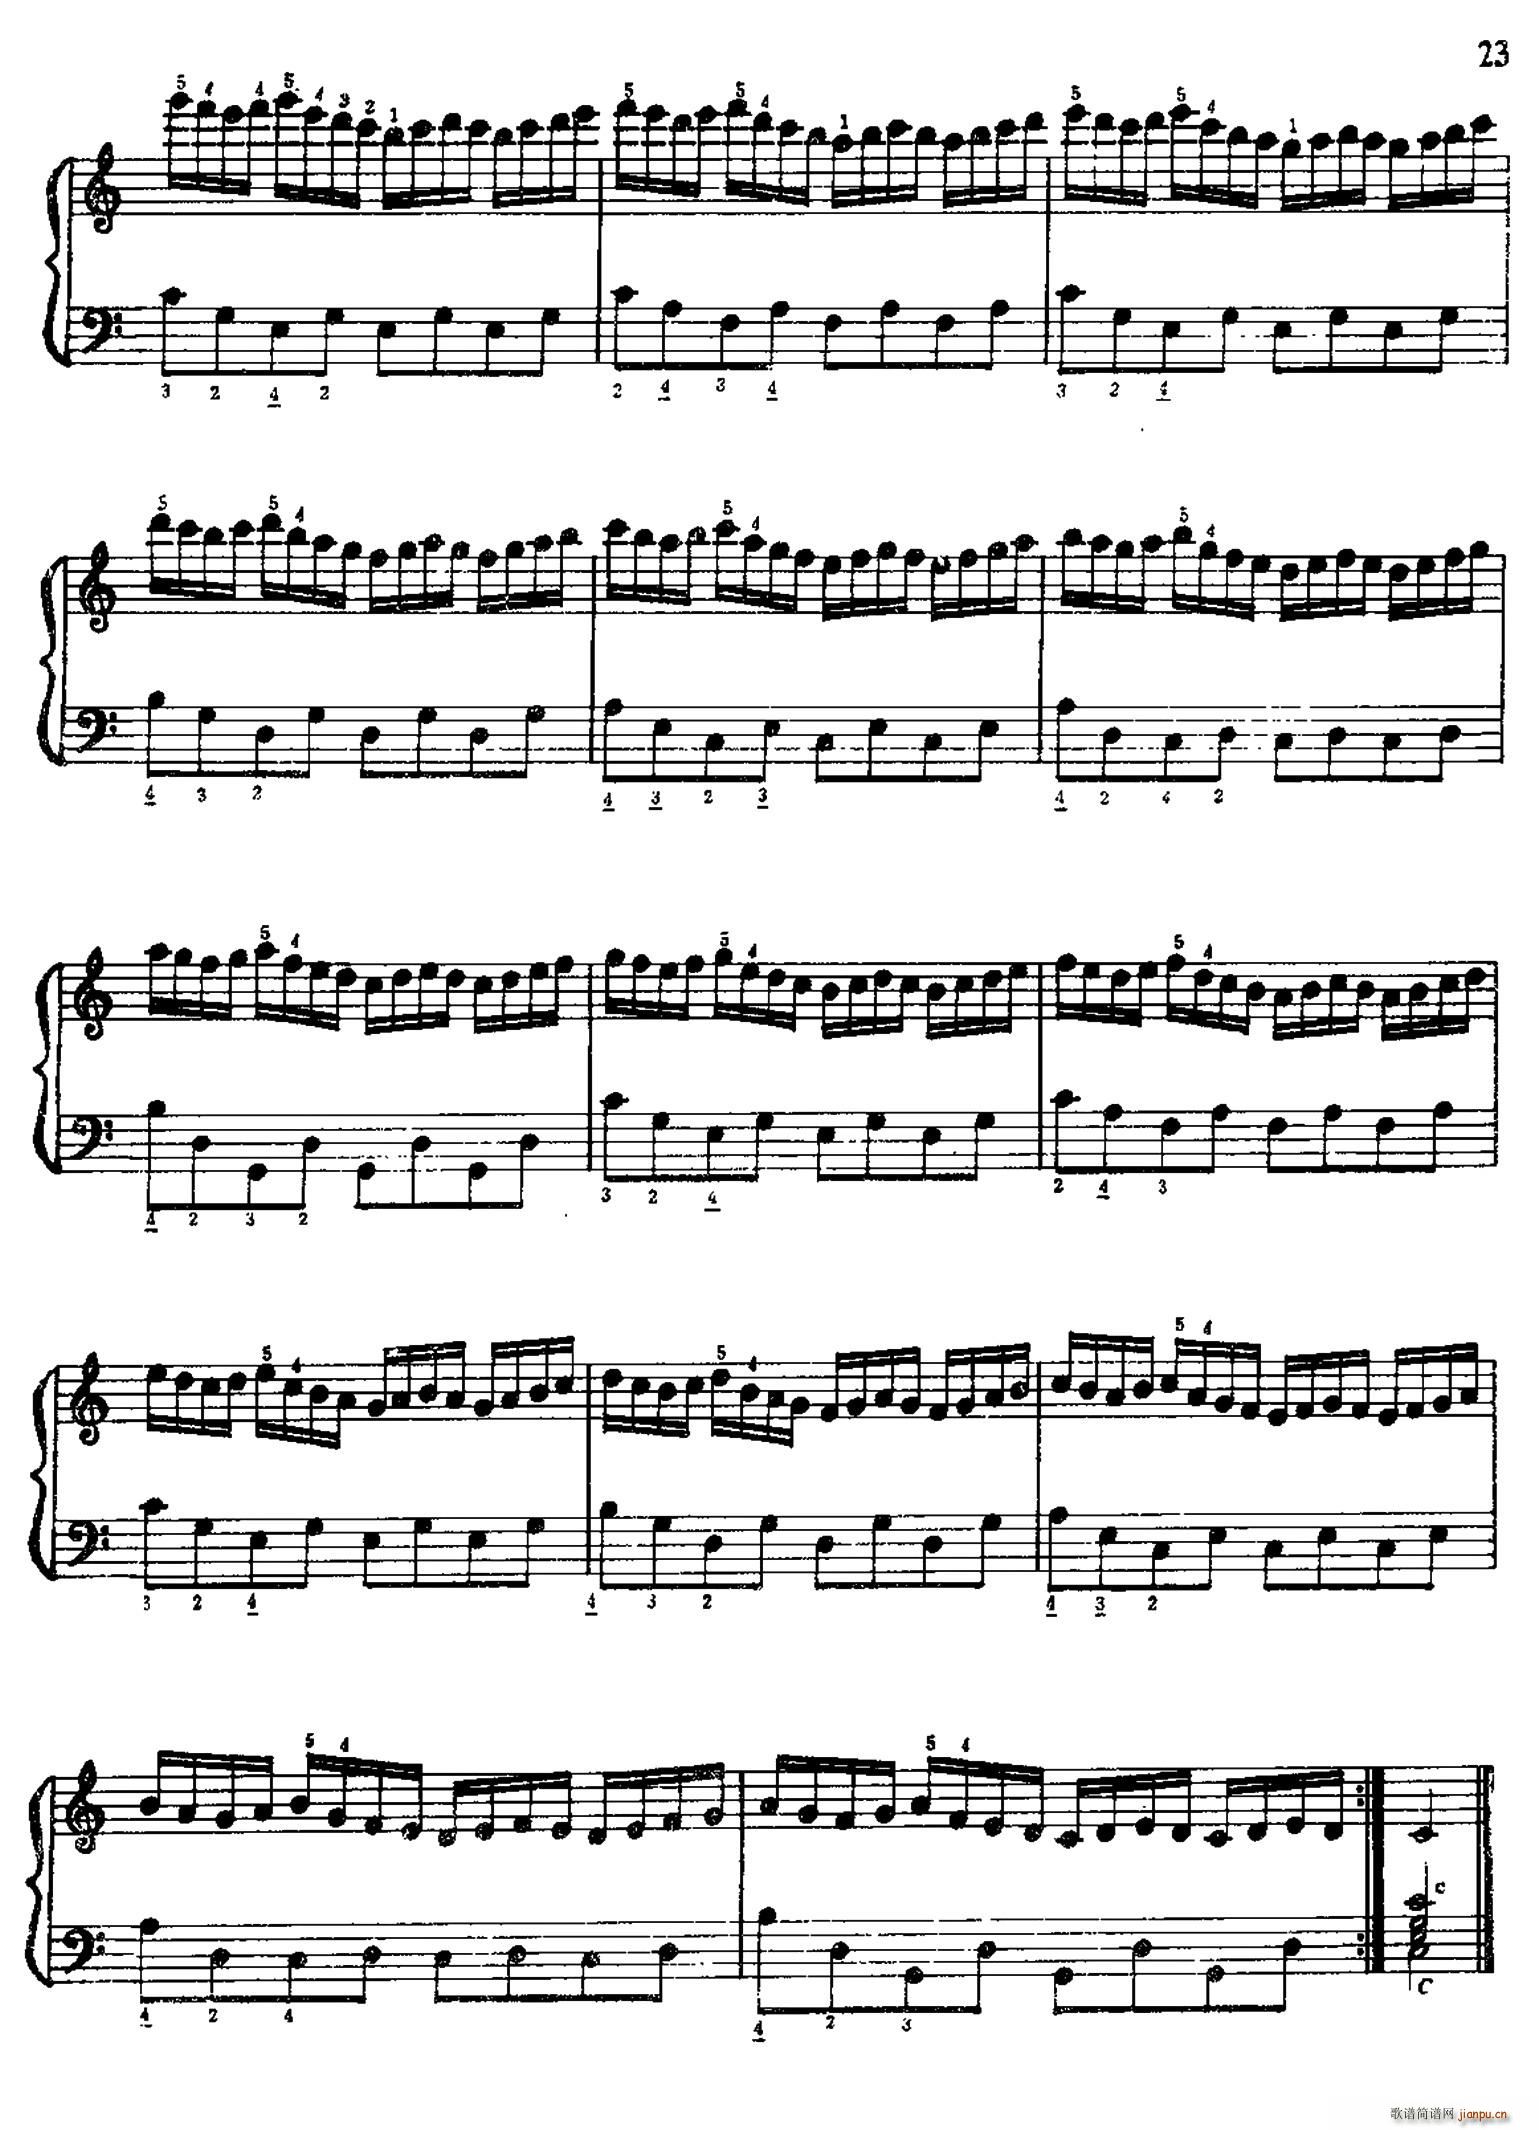 手风琴手指练习 第一部分 21 30 2